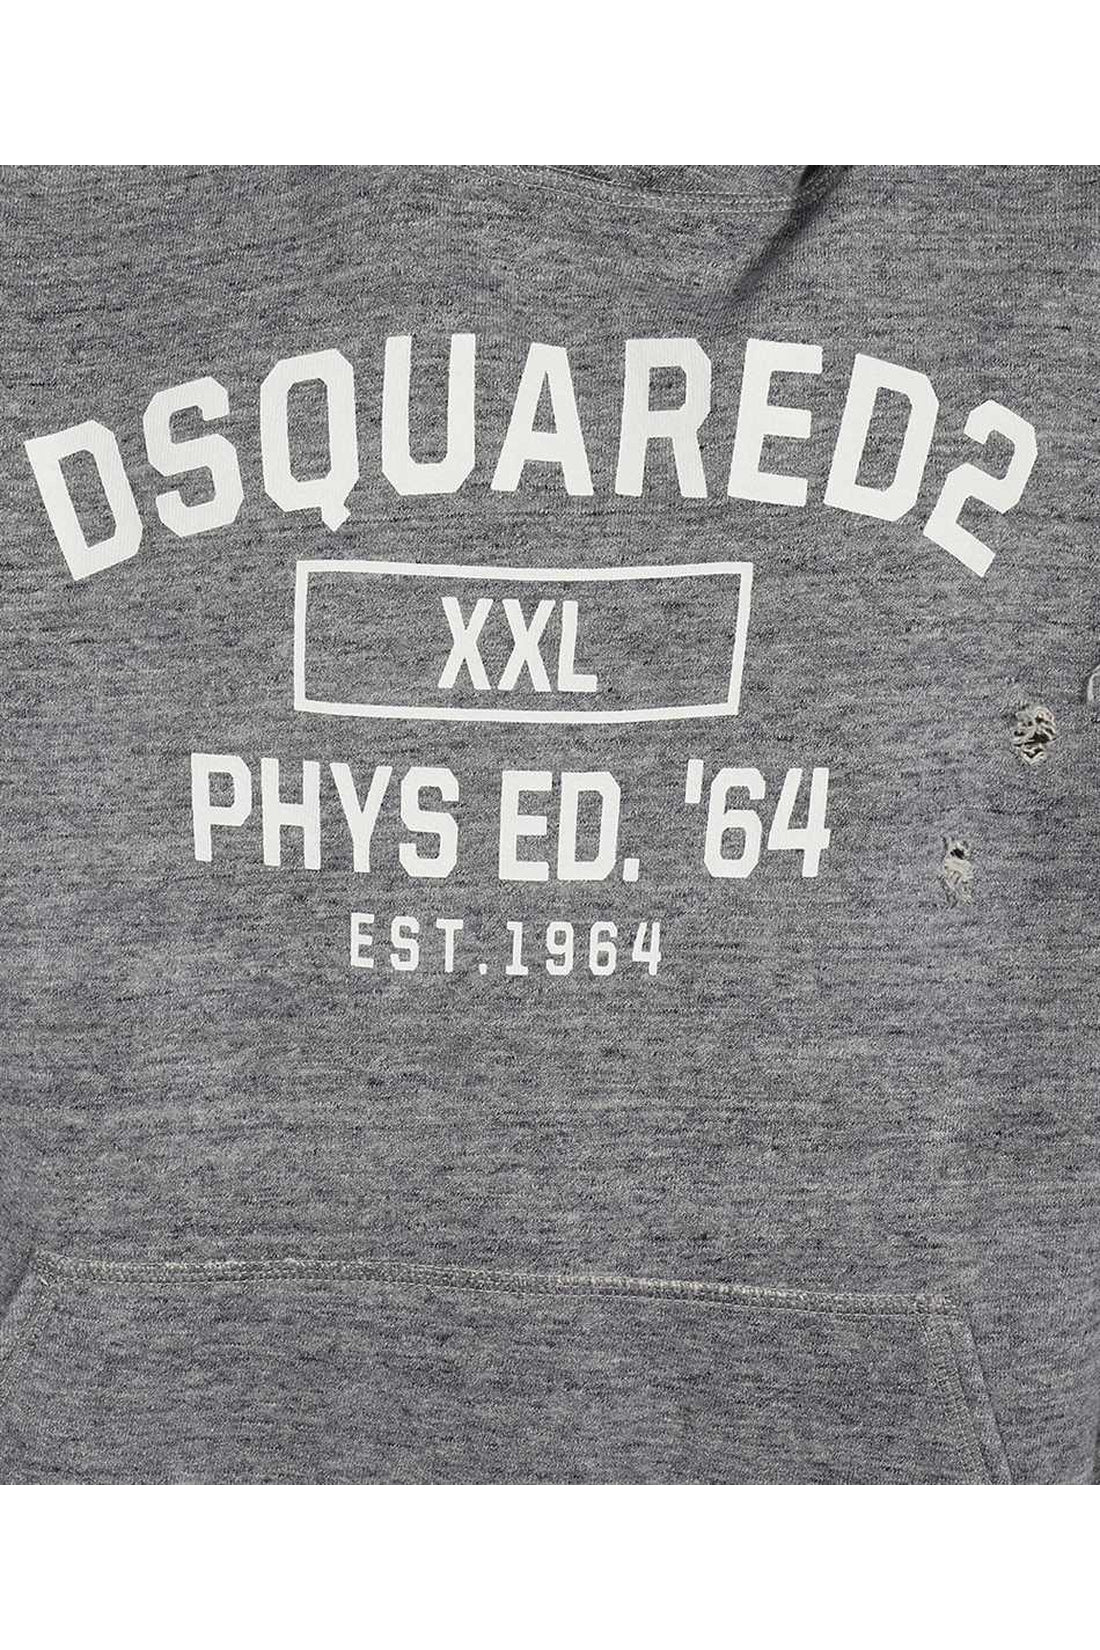 Dsquared2-OUTLET-SALE-Cotton hoodie-ARCHIVIST